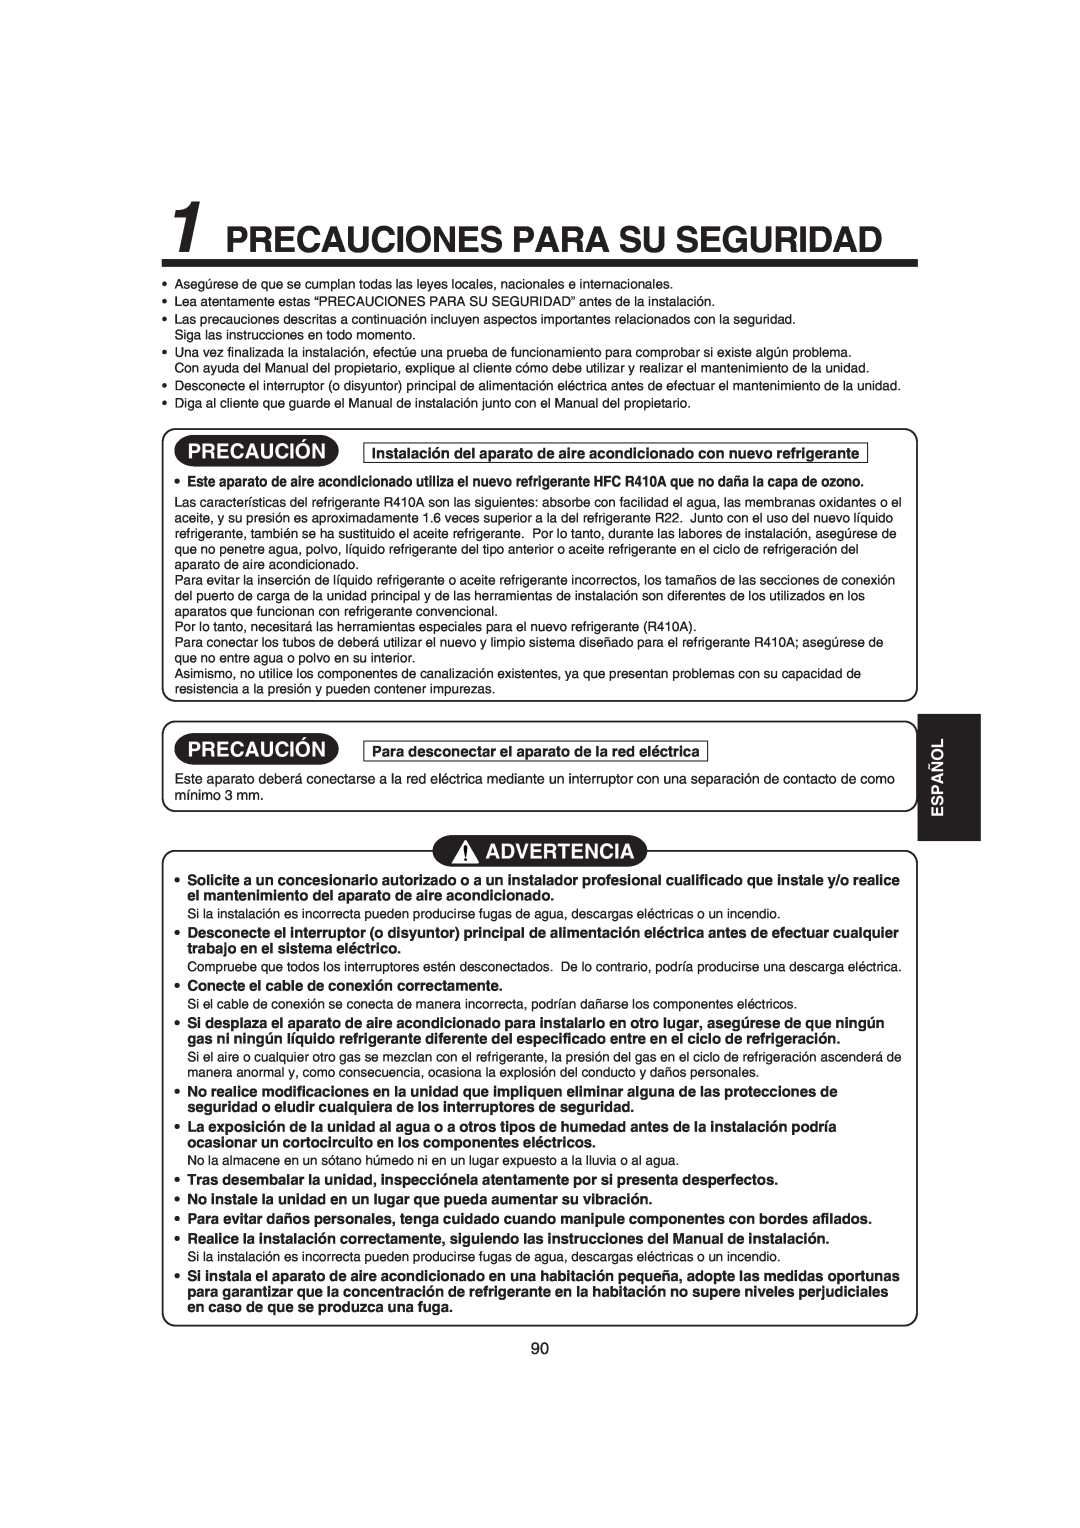 Pentax MMK-AP0121H, MMK-AP0181H, MMK-AP0071H Precauciones Para Su Seguridad, Precaución, Advertencia, Español 